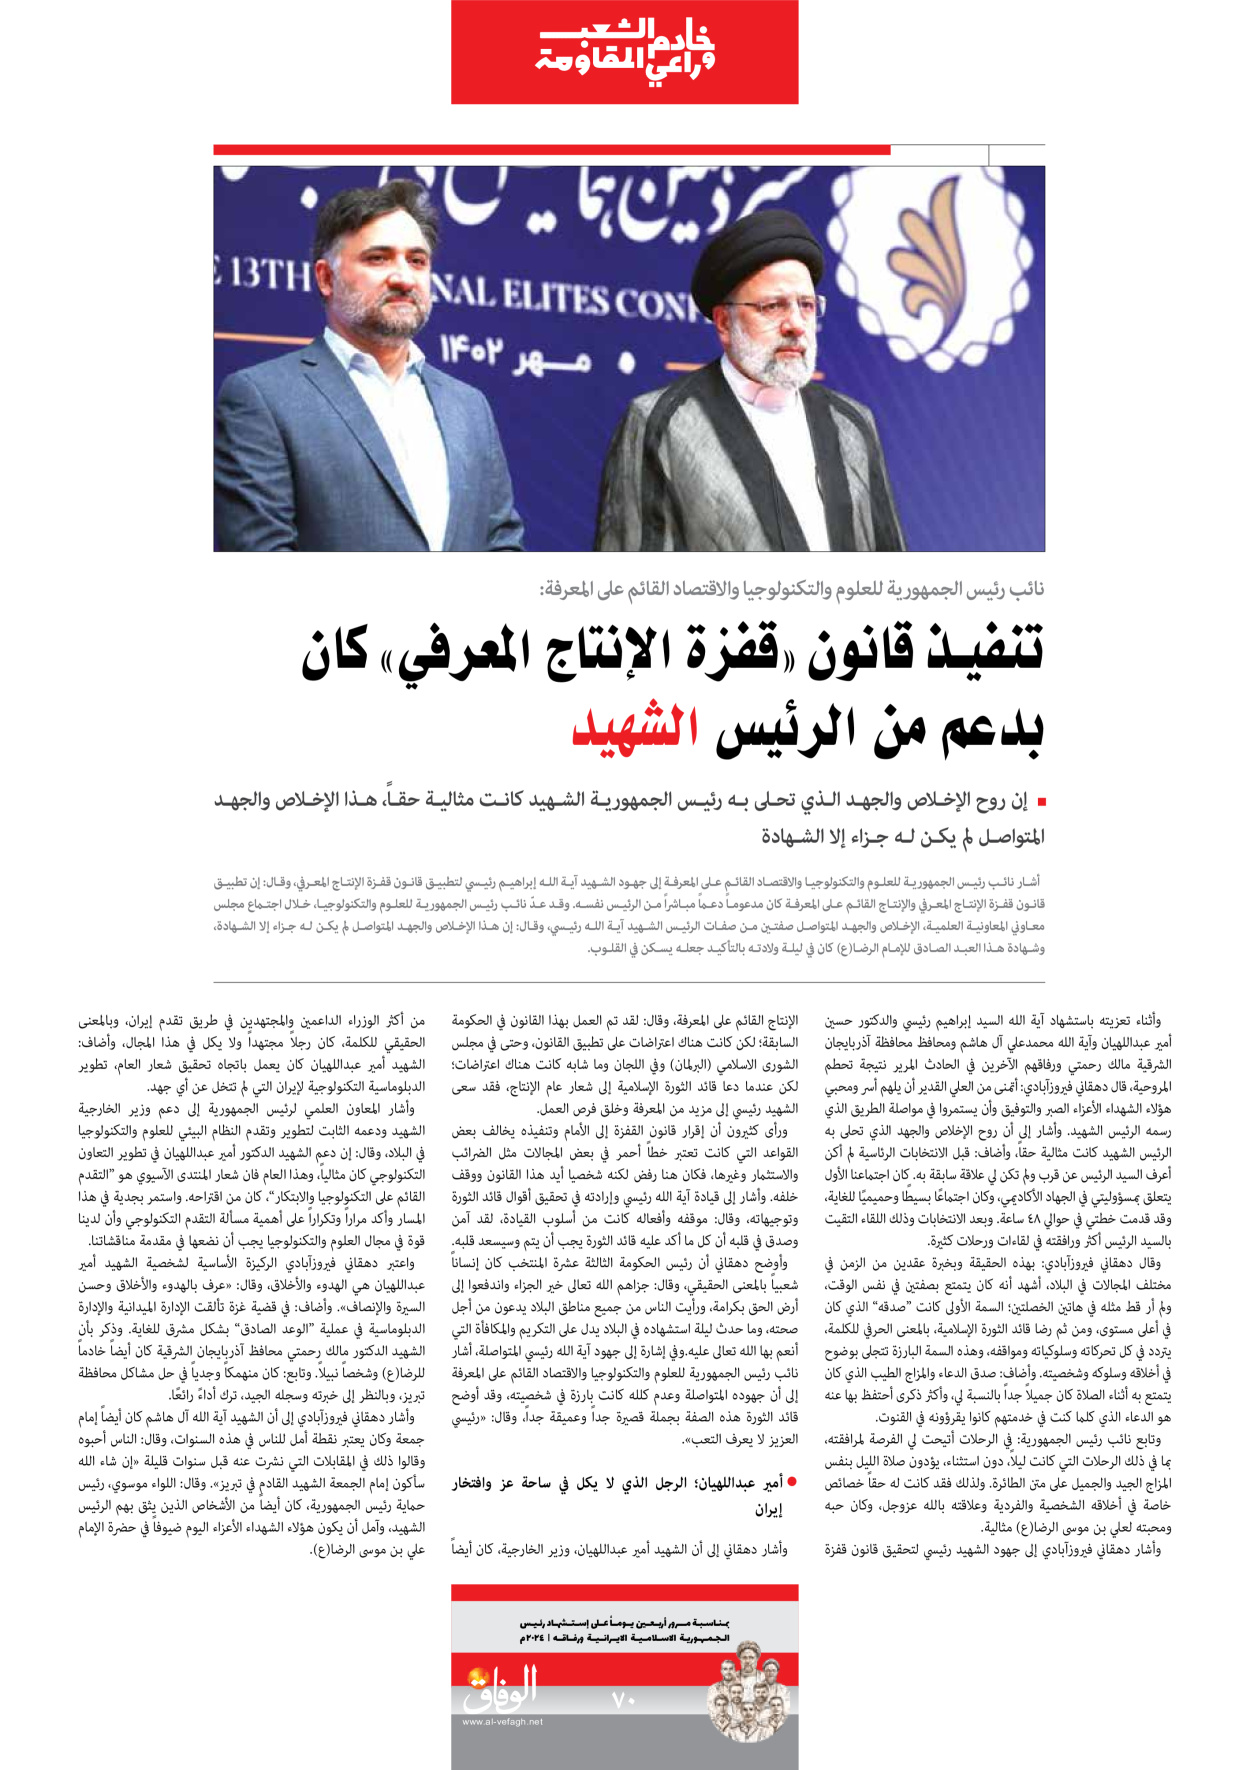 صحیفة ایران الدولیة الوفاق - ملحق ویژه نامه چهلم شهید رییسی - ٢٩ يونيو ٢٠٢٤ - الصفحة ۷۰